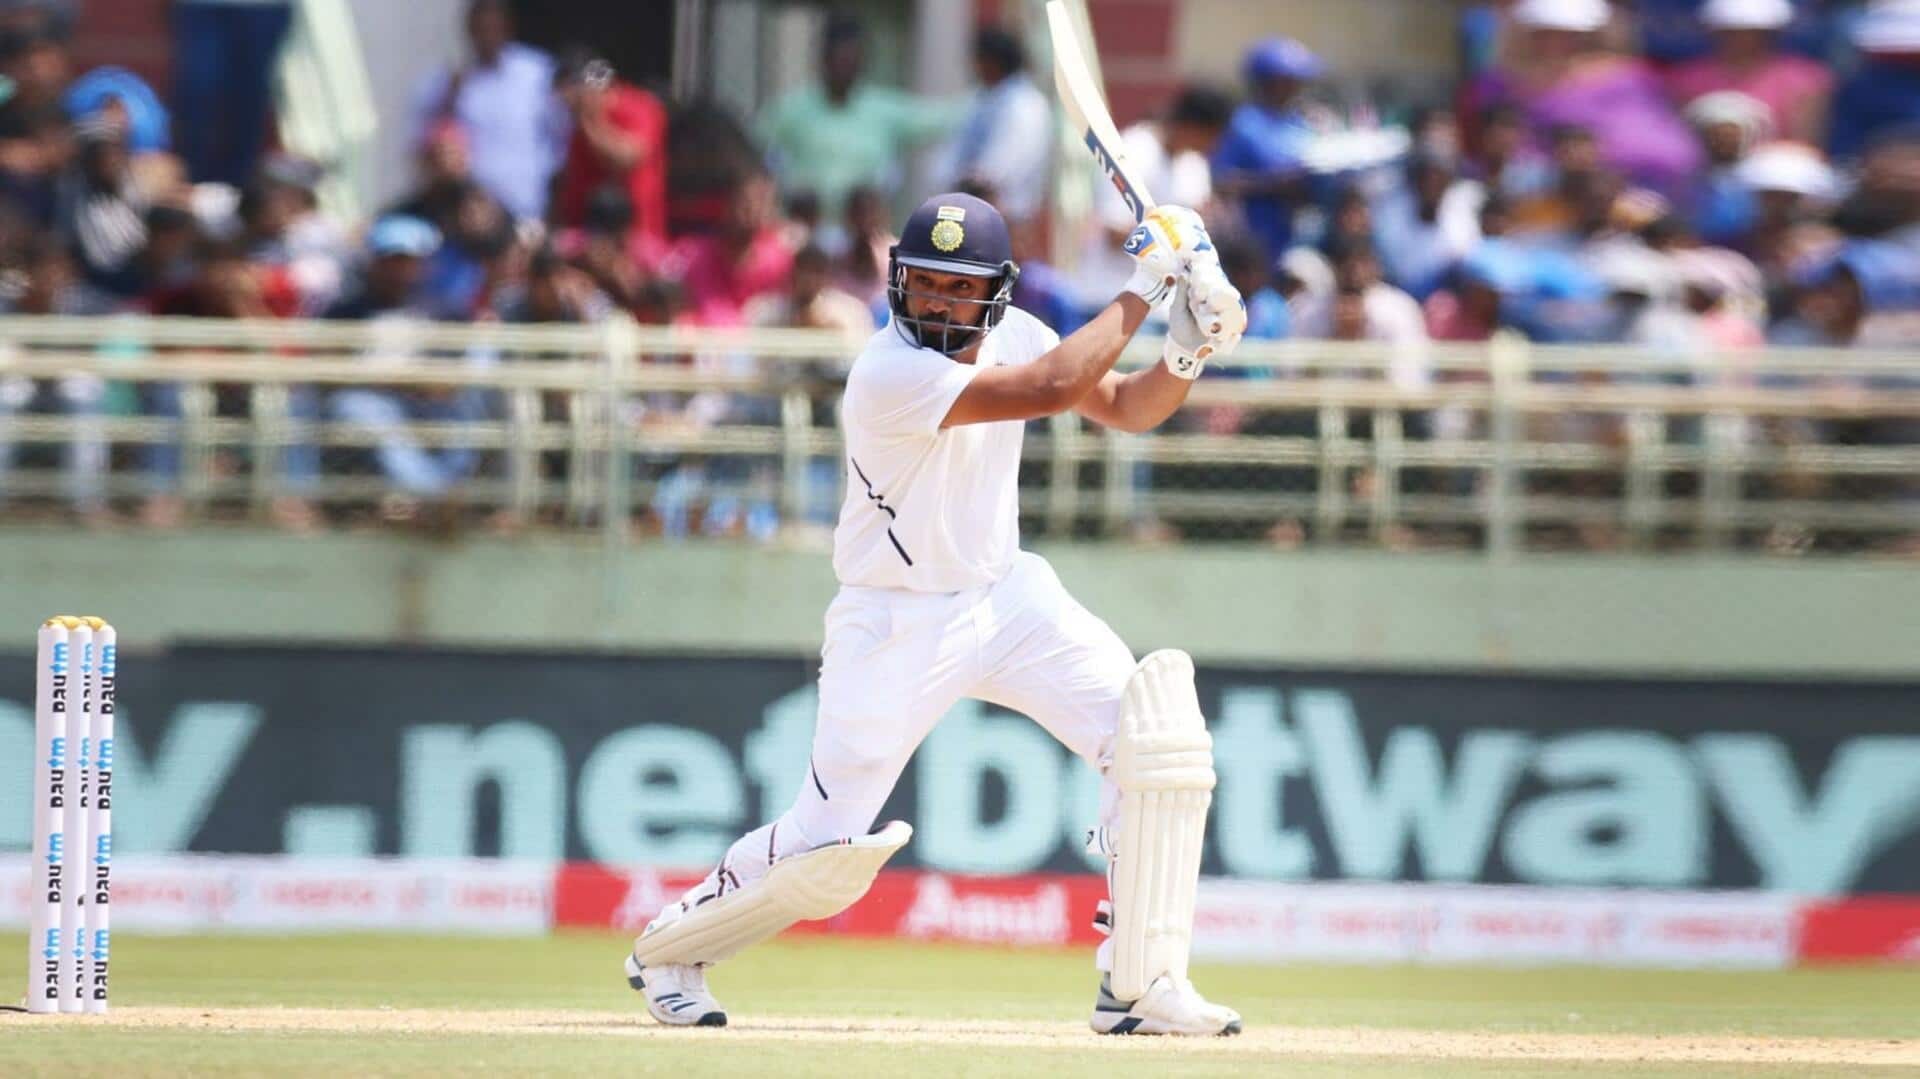 बॉर्डर-गावस्कर ट्रॉफी: रोहित शर्मा ने अंतरराष्ट्रीय क्रिकेट में पूरे किए 17,000 रन, शानदार रहे उनके आंकड़े 